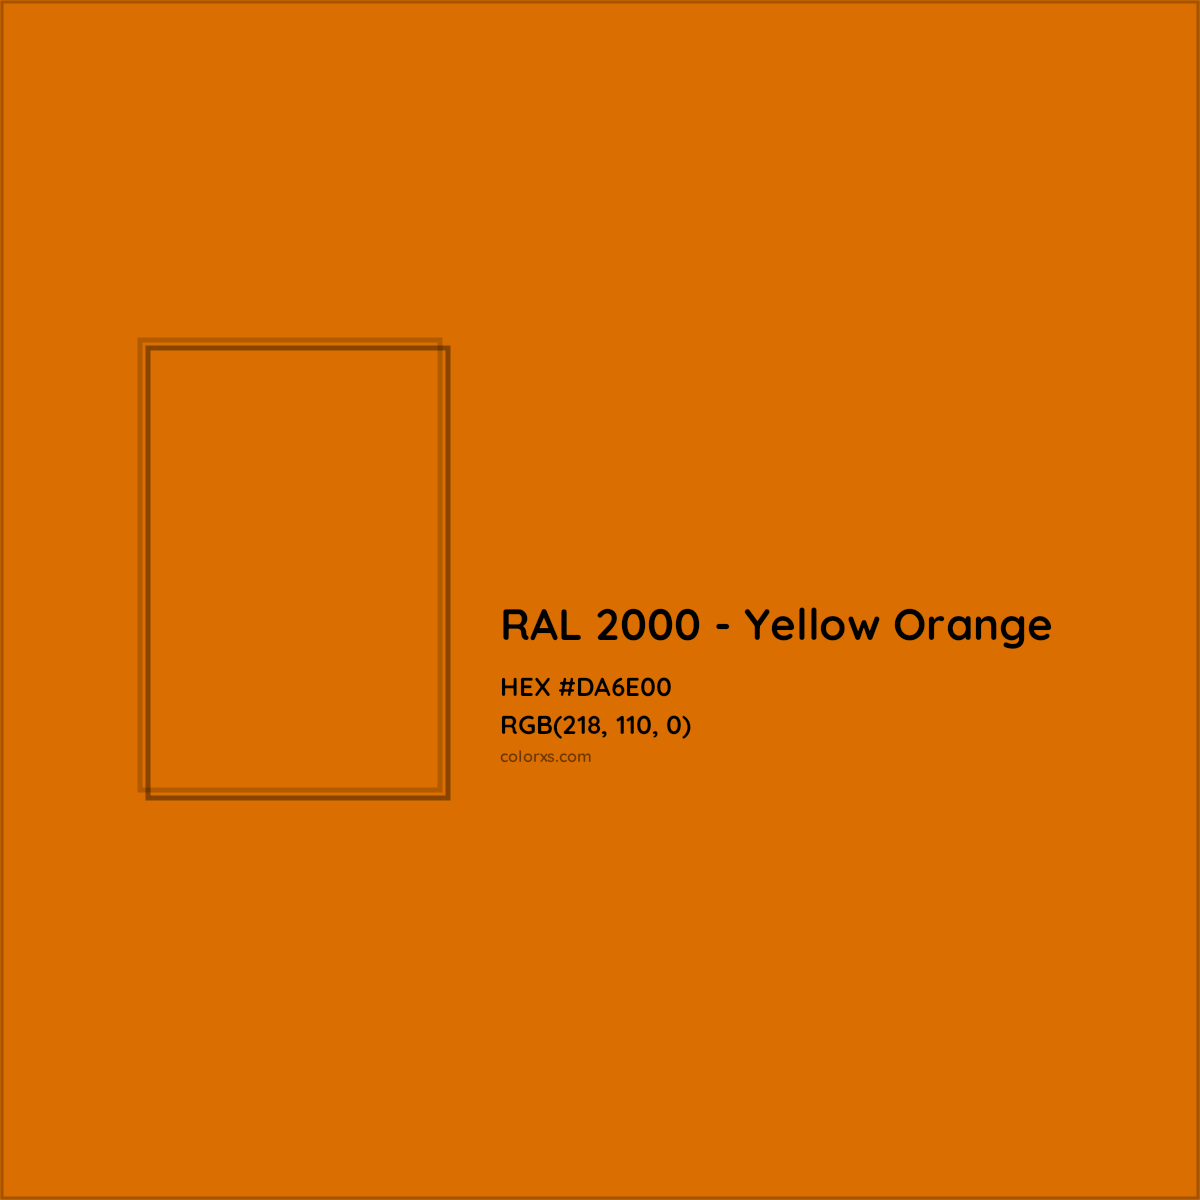 HEX #DA6E00 RAL 2000 - Yellow Orange CMS RAL Classic - Color Code